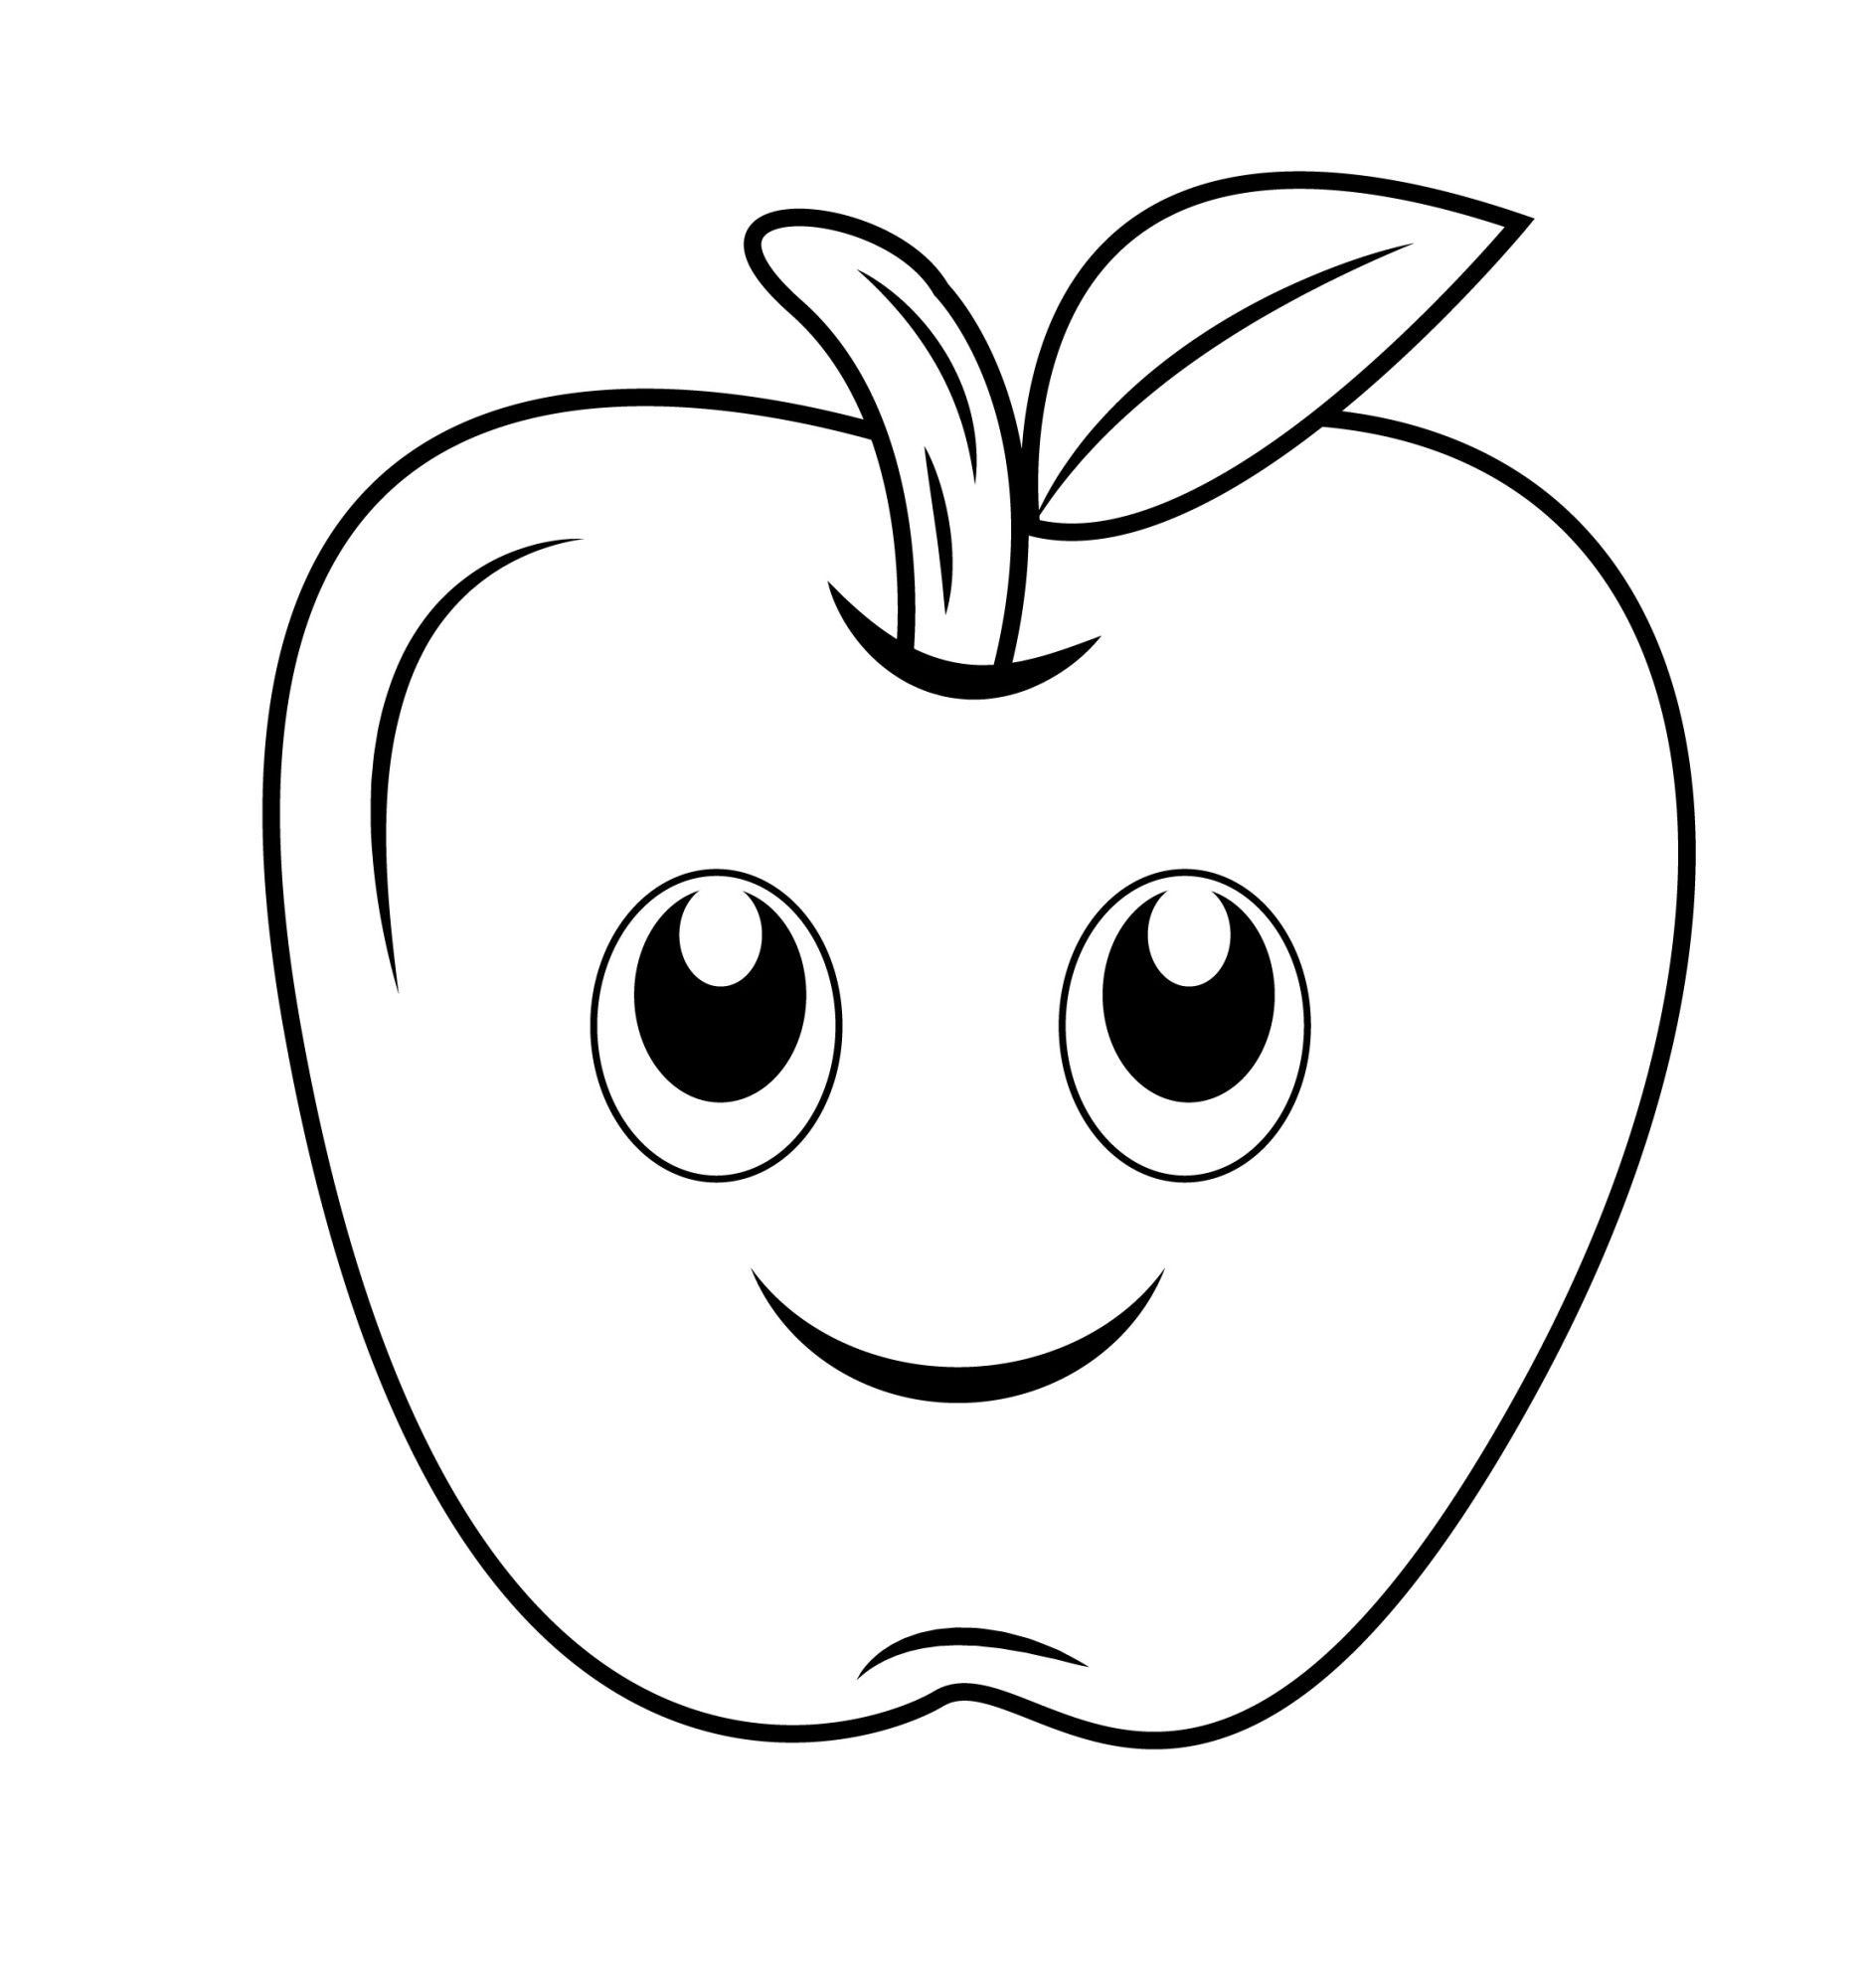 Раскраска для детей: яблочко с милым лицом